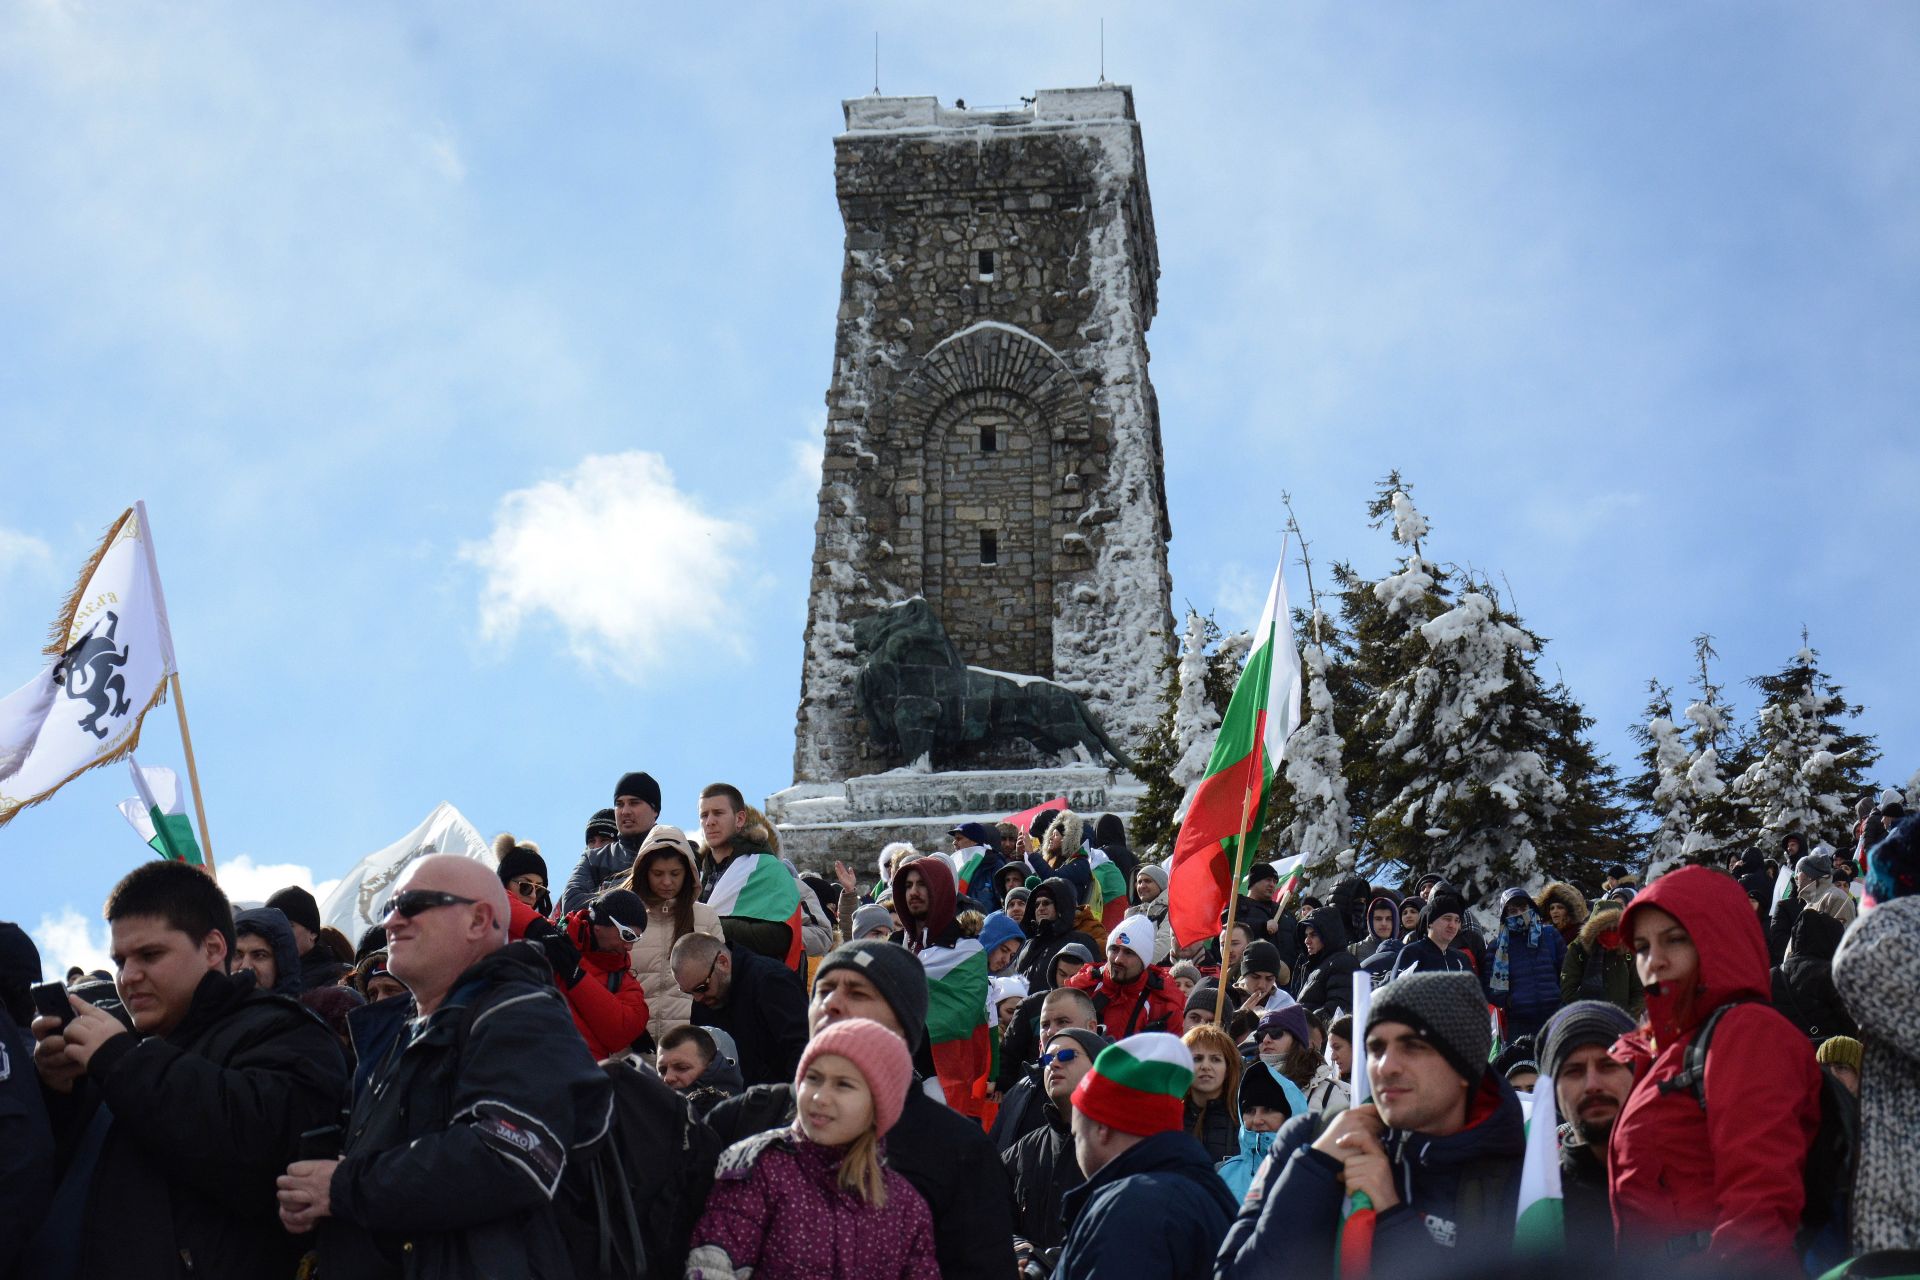 Мъглата и ниските температури не спряха българи от цялата страна да се качат на Шипка, за да отпразнуват там националния ни празник 3 март